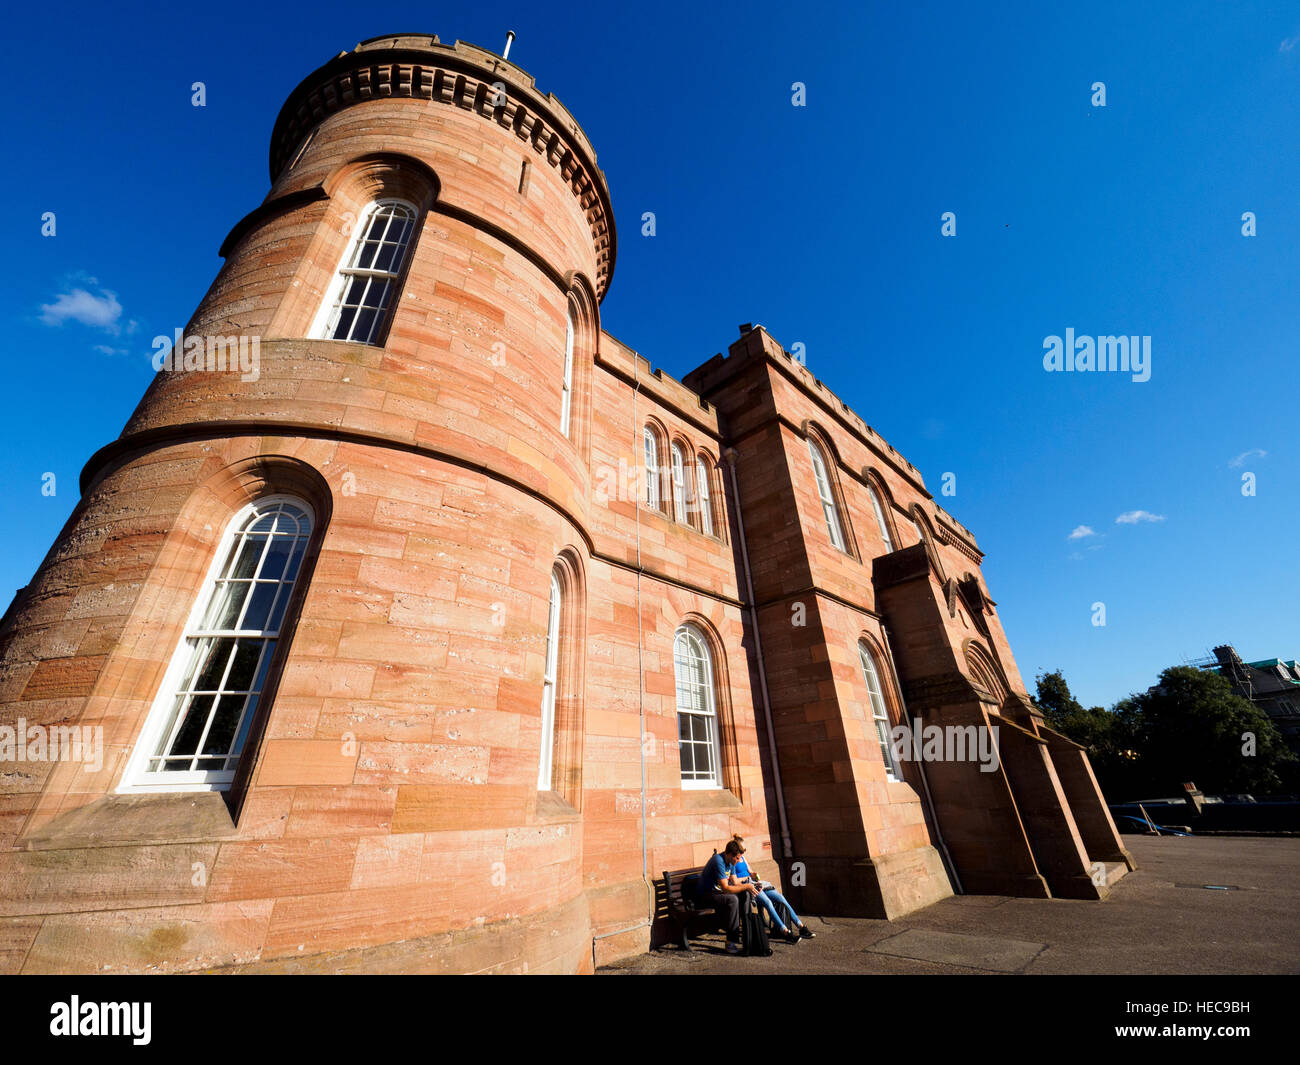 Le château d'Inverness - Écosse, Royaume-Uni Banque D'Images